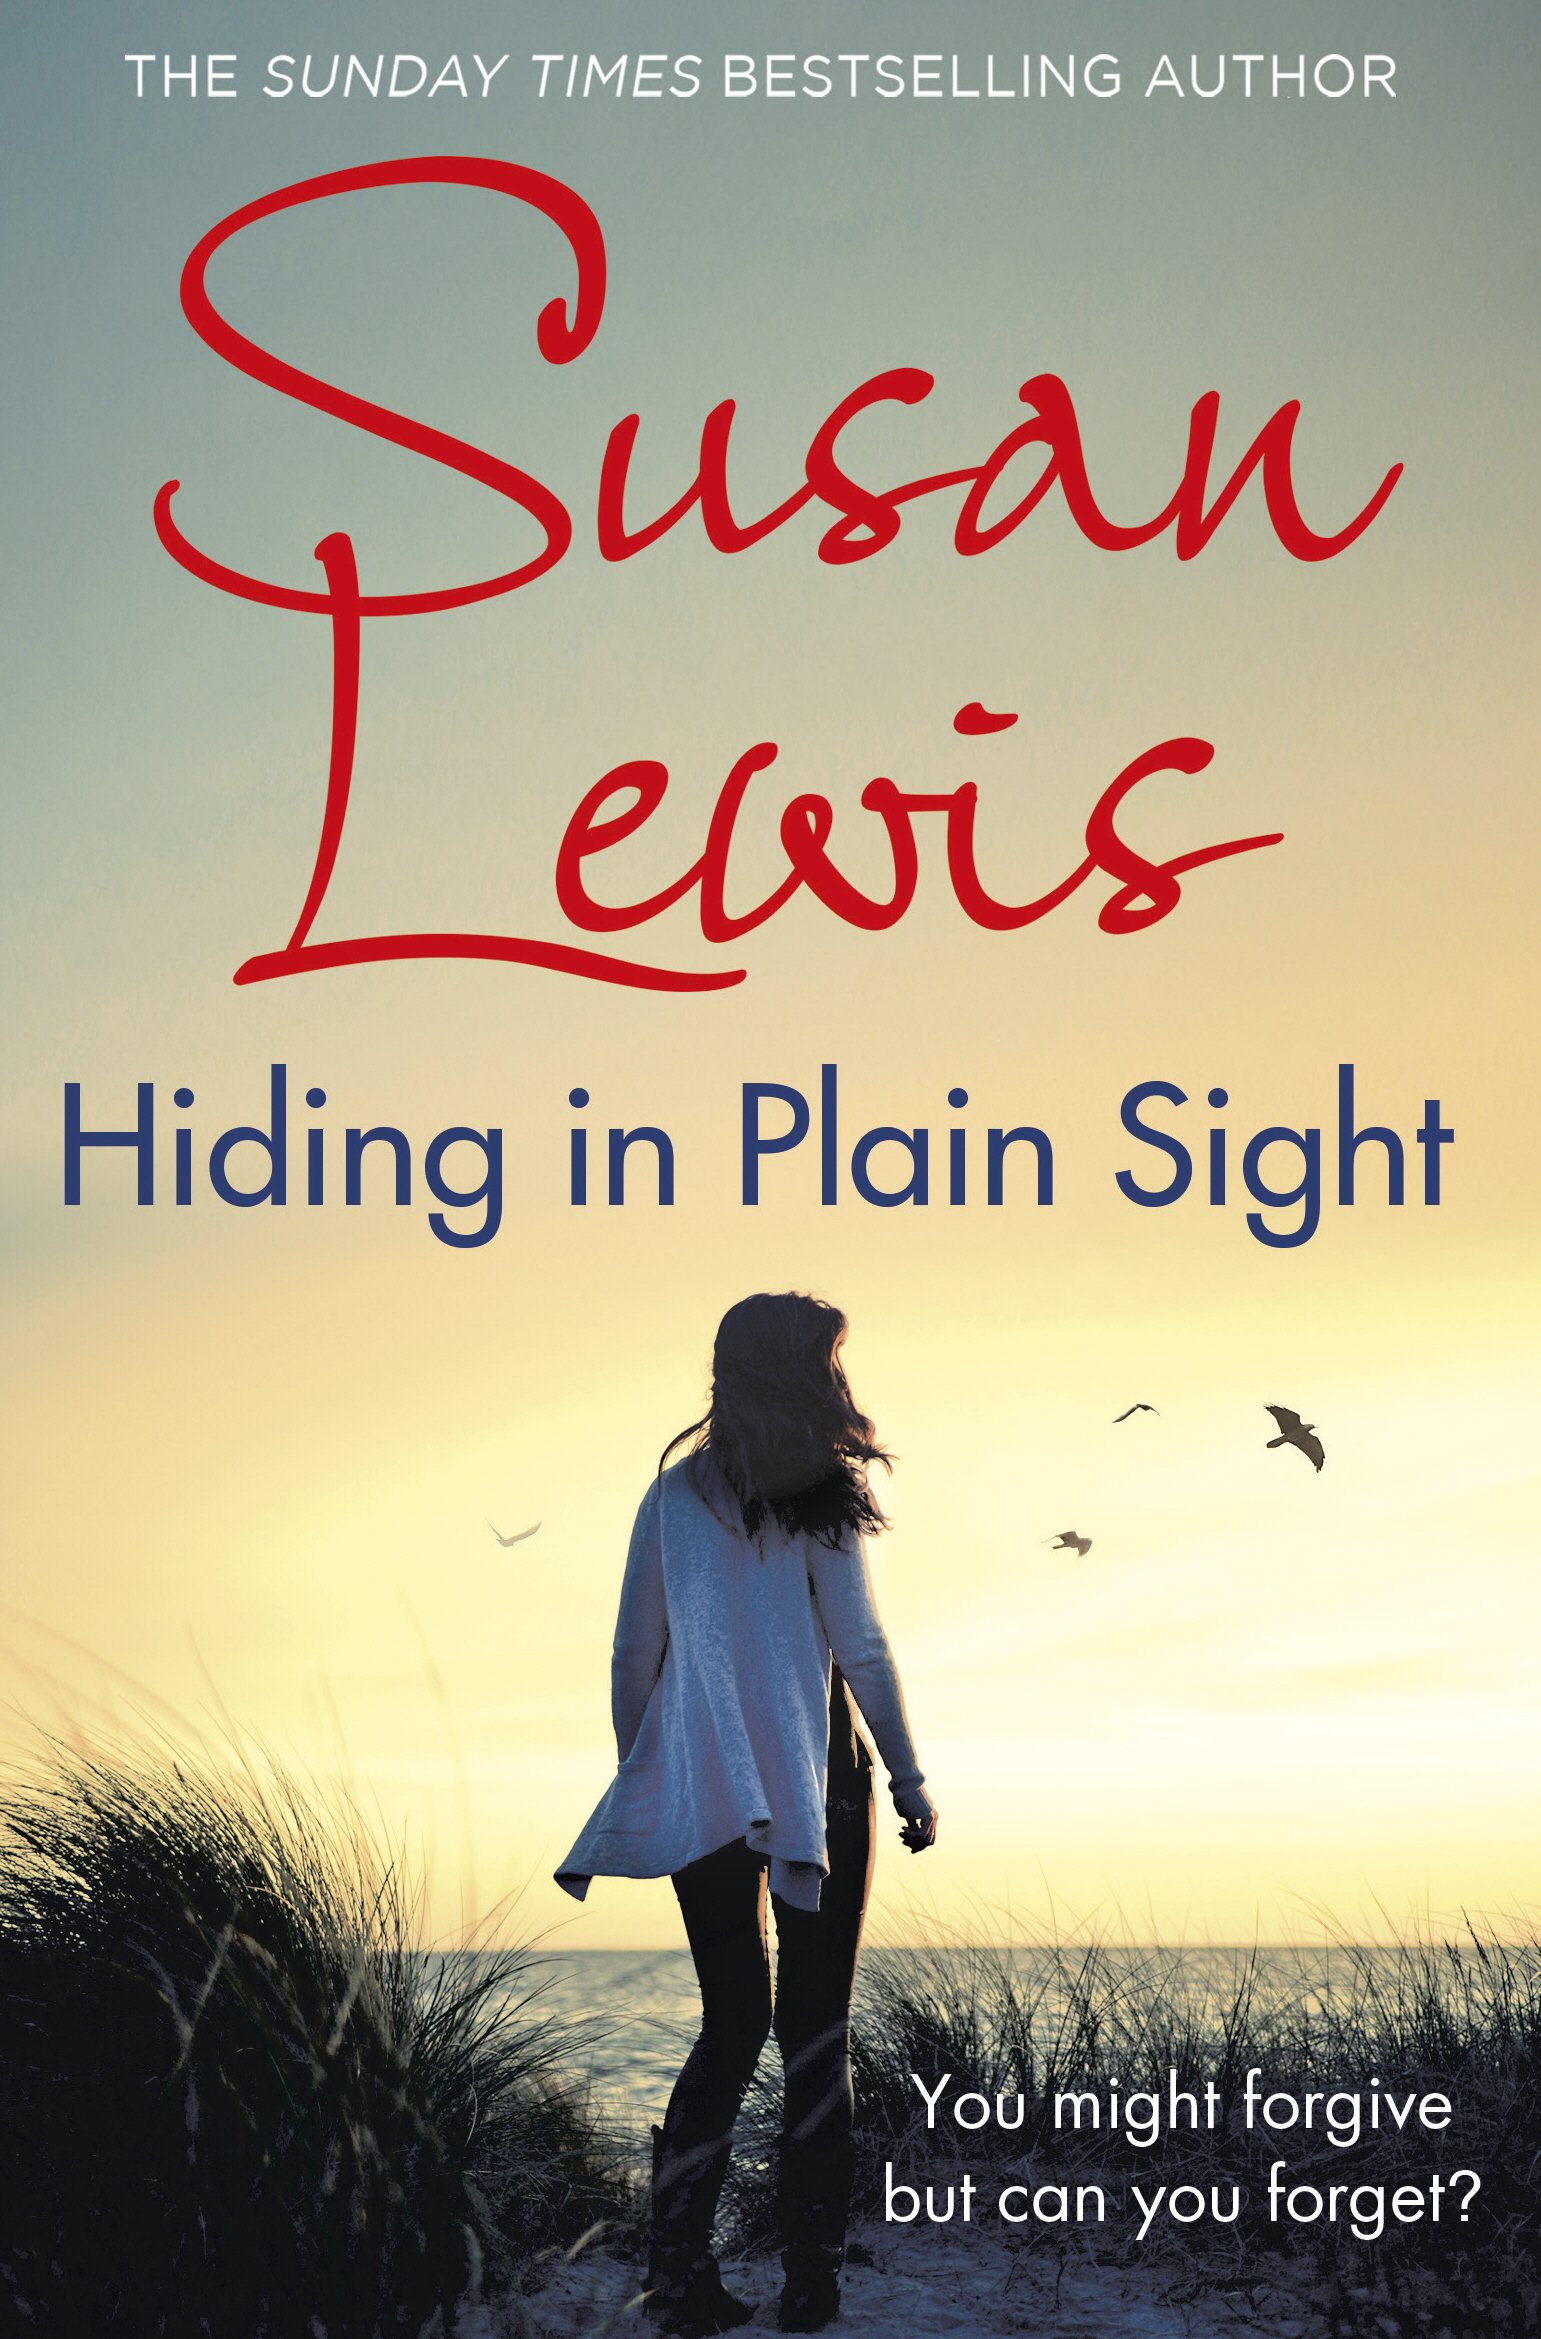 Hiding in Plain Sight | Susan Lewis